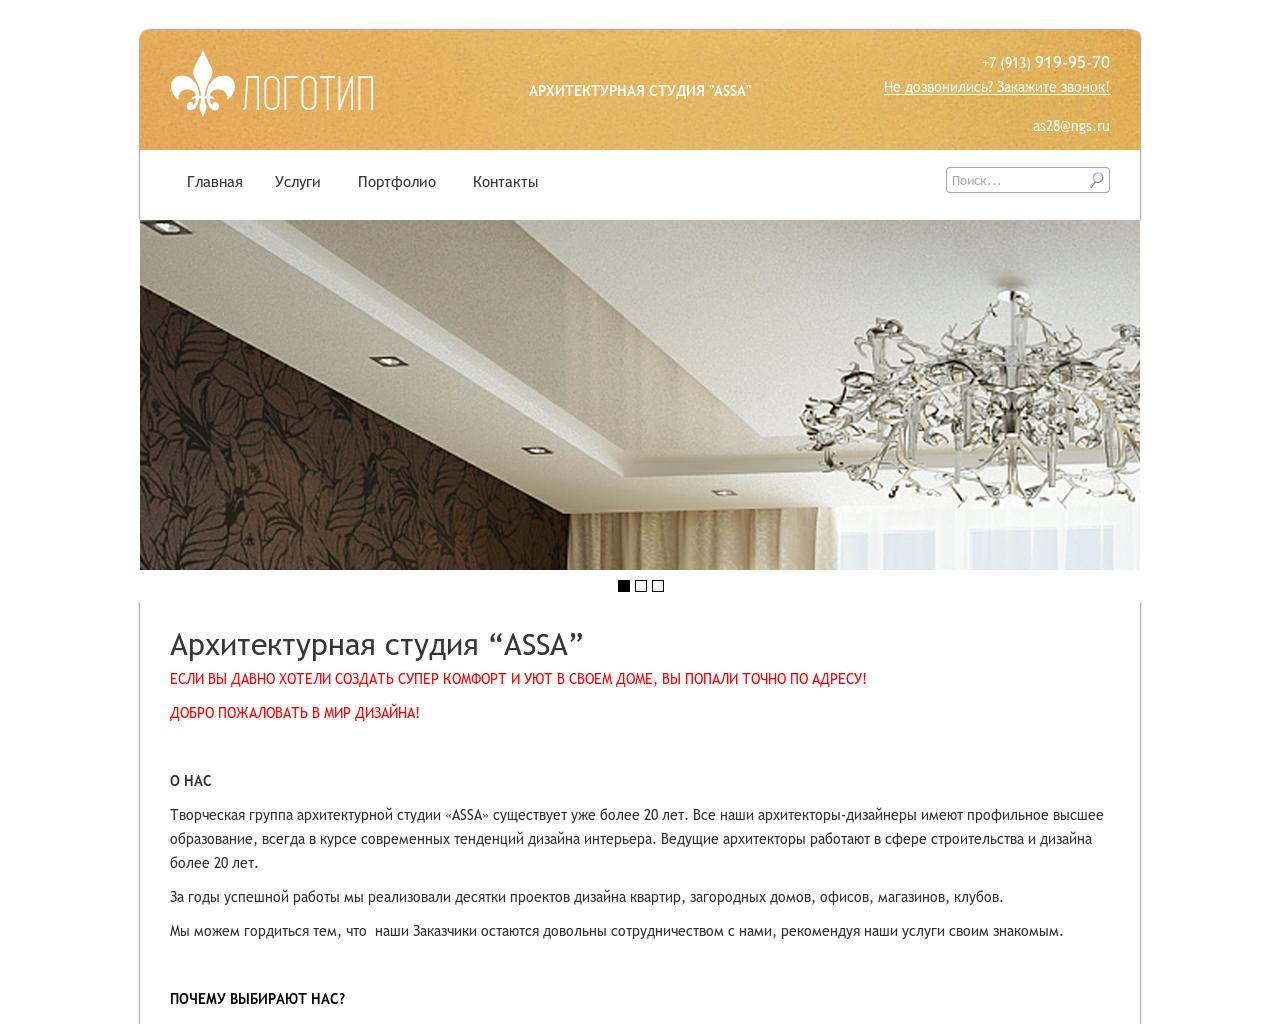 Изображение сайта assa28.ru в разрешении 1280x1024